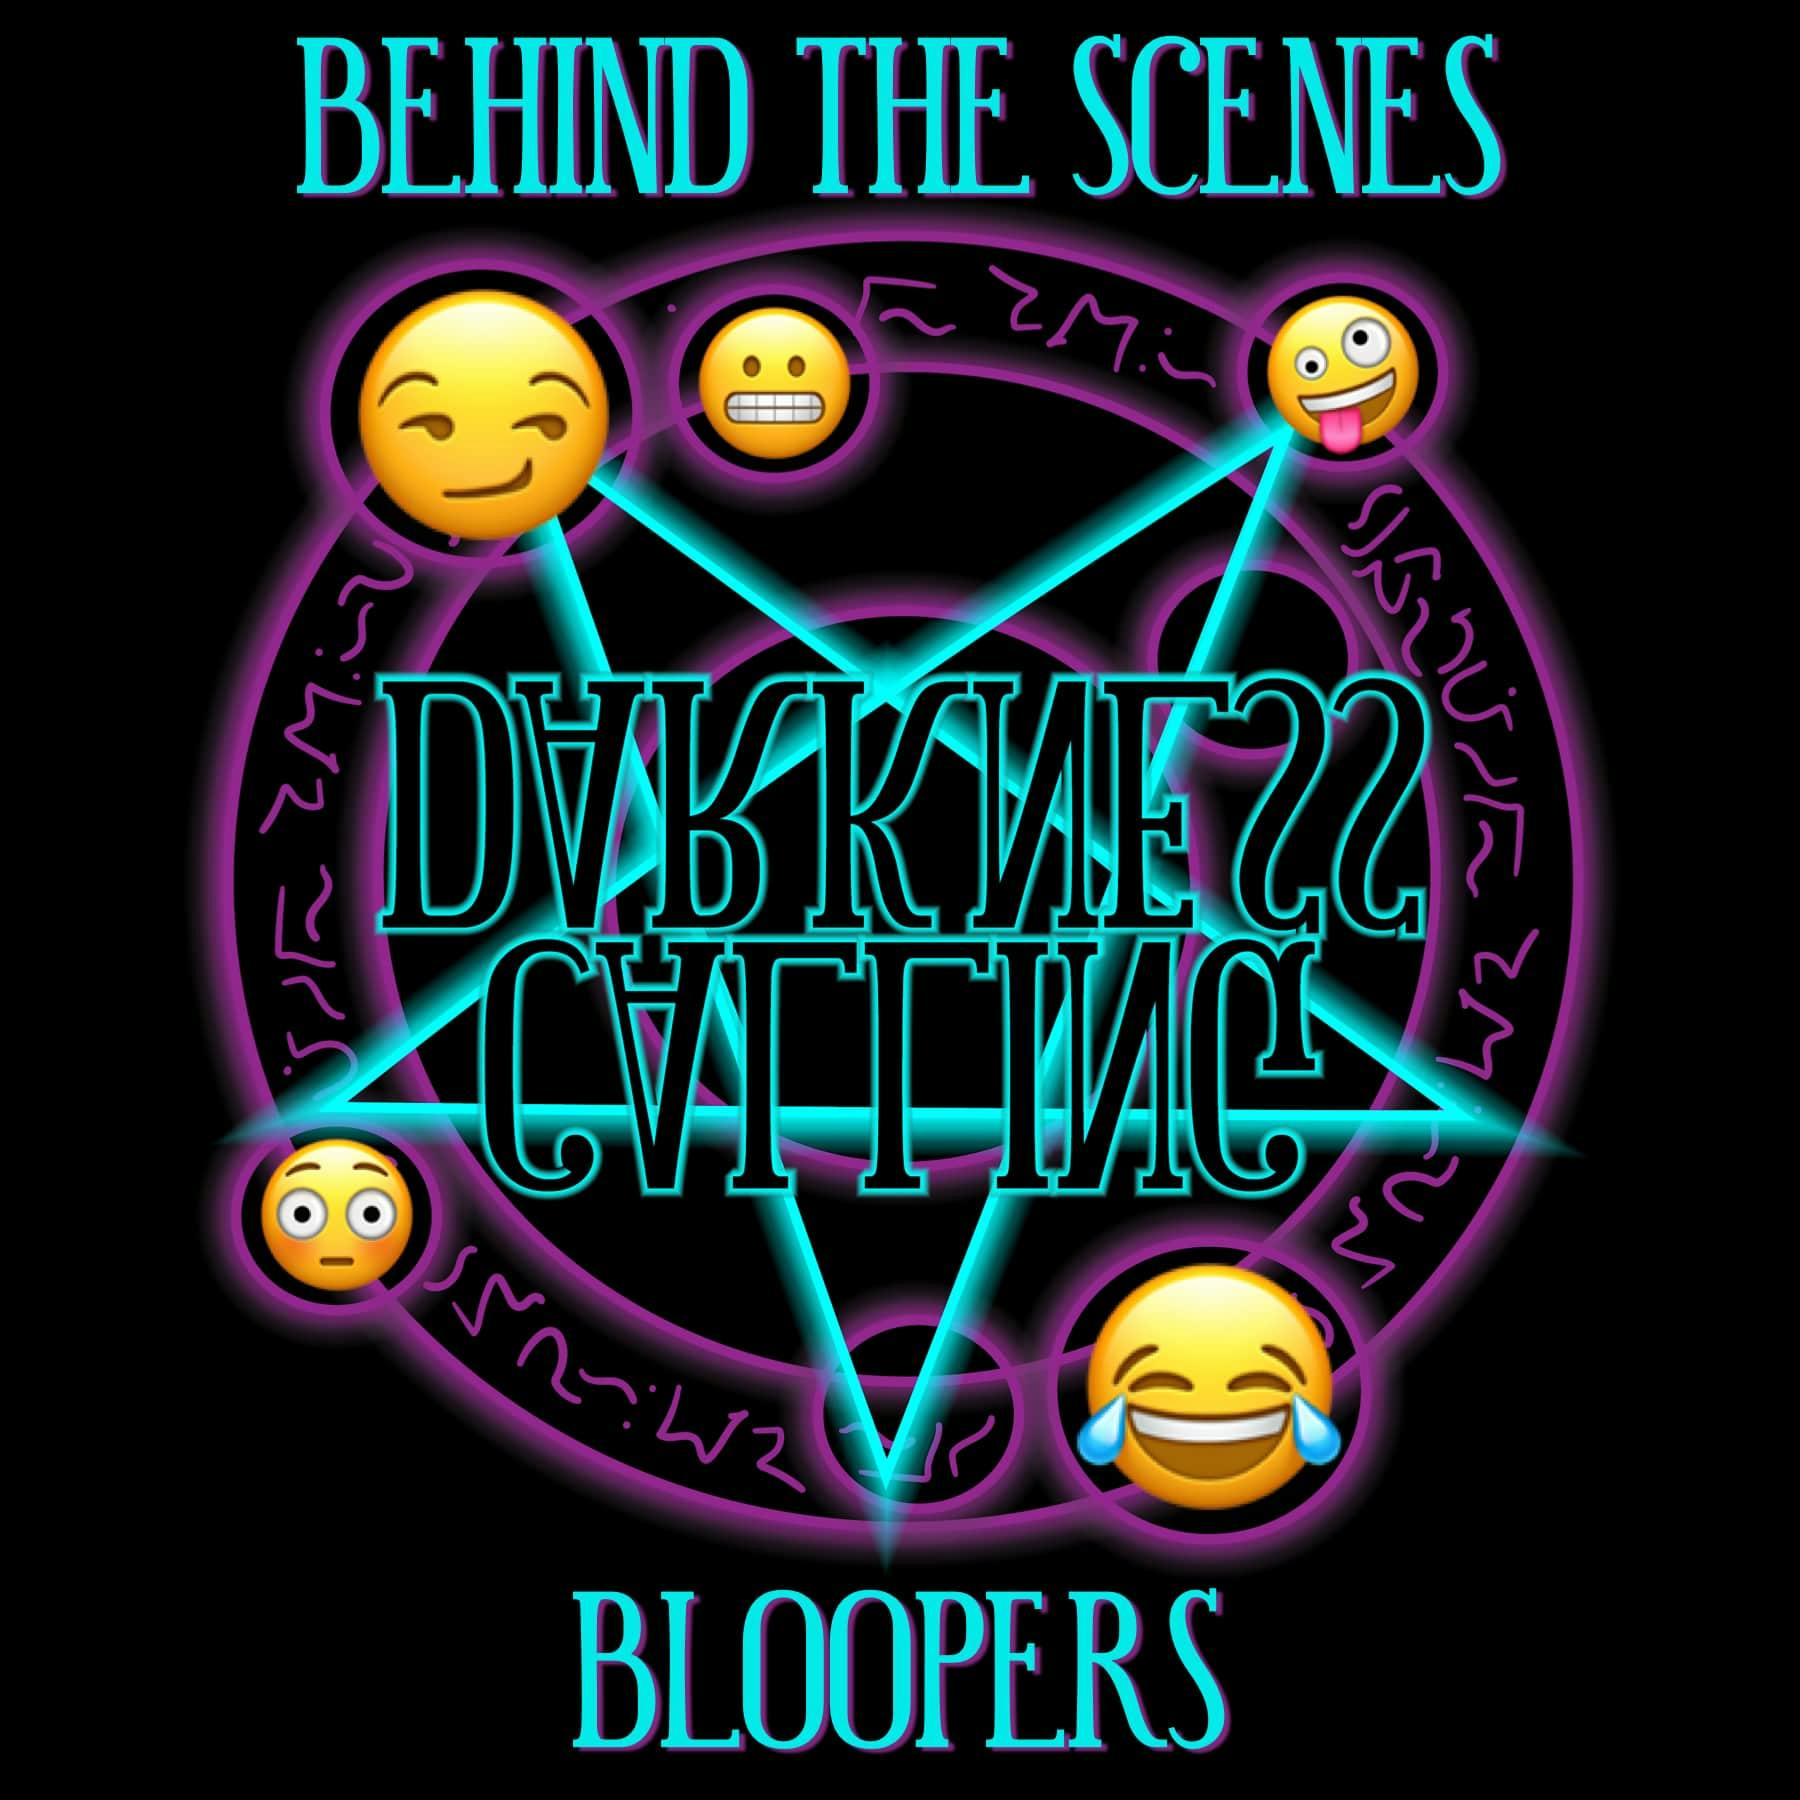 Season One, Bonus Episode "Behind The Scenes Bloopers"